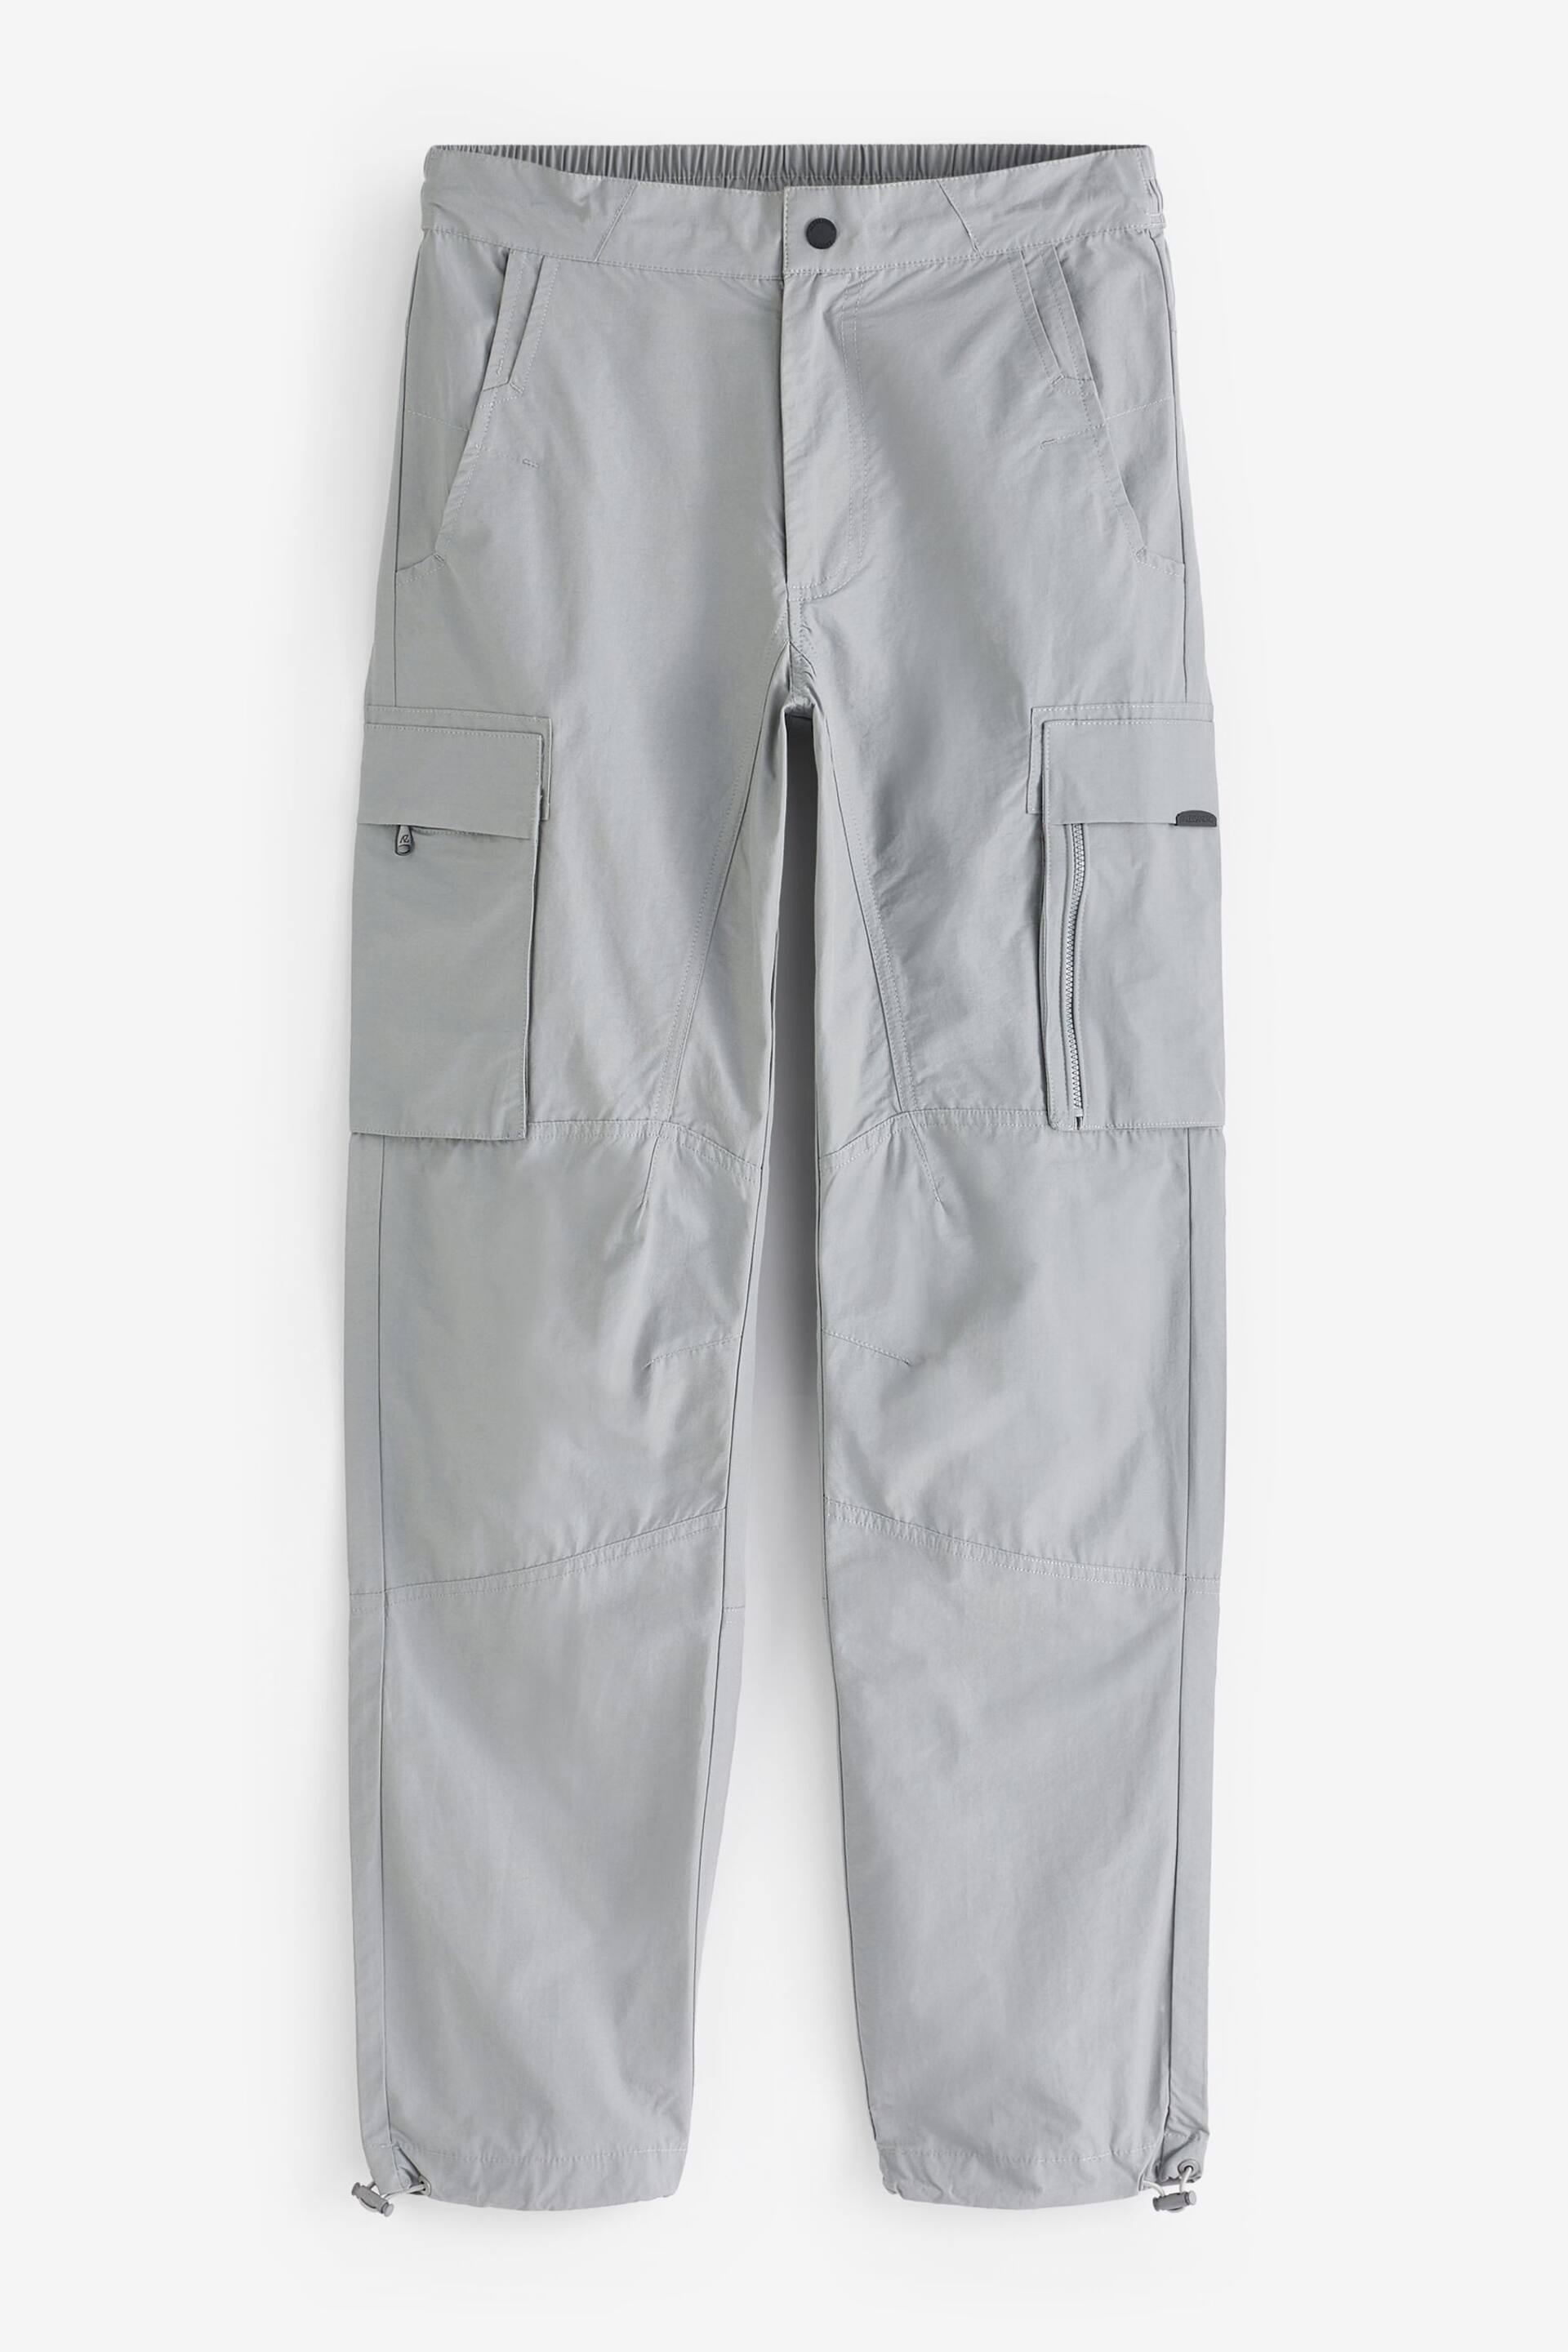 Alessandro Zavetti Grey Lodetti Cargo Trousers - Image 7 of 7